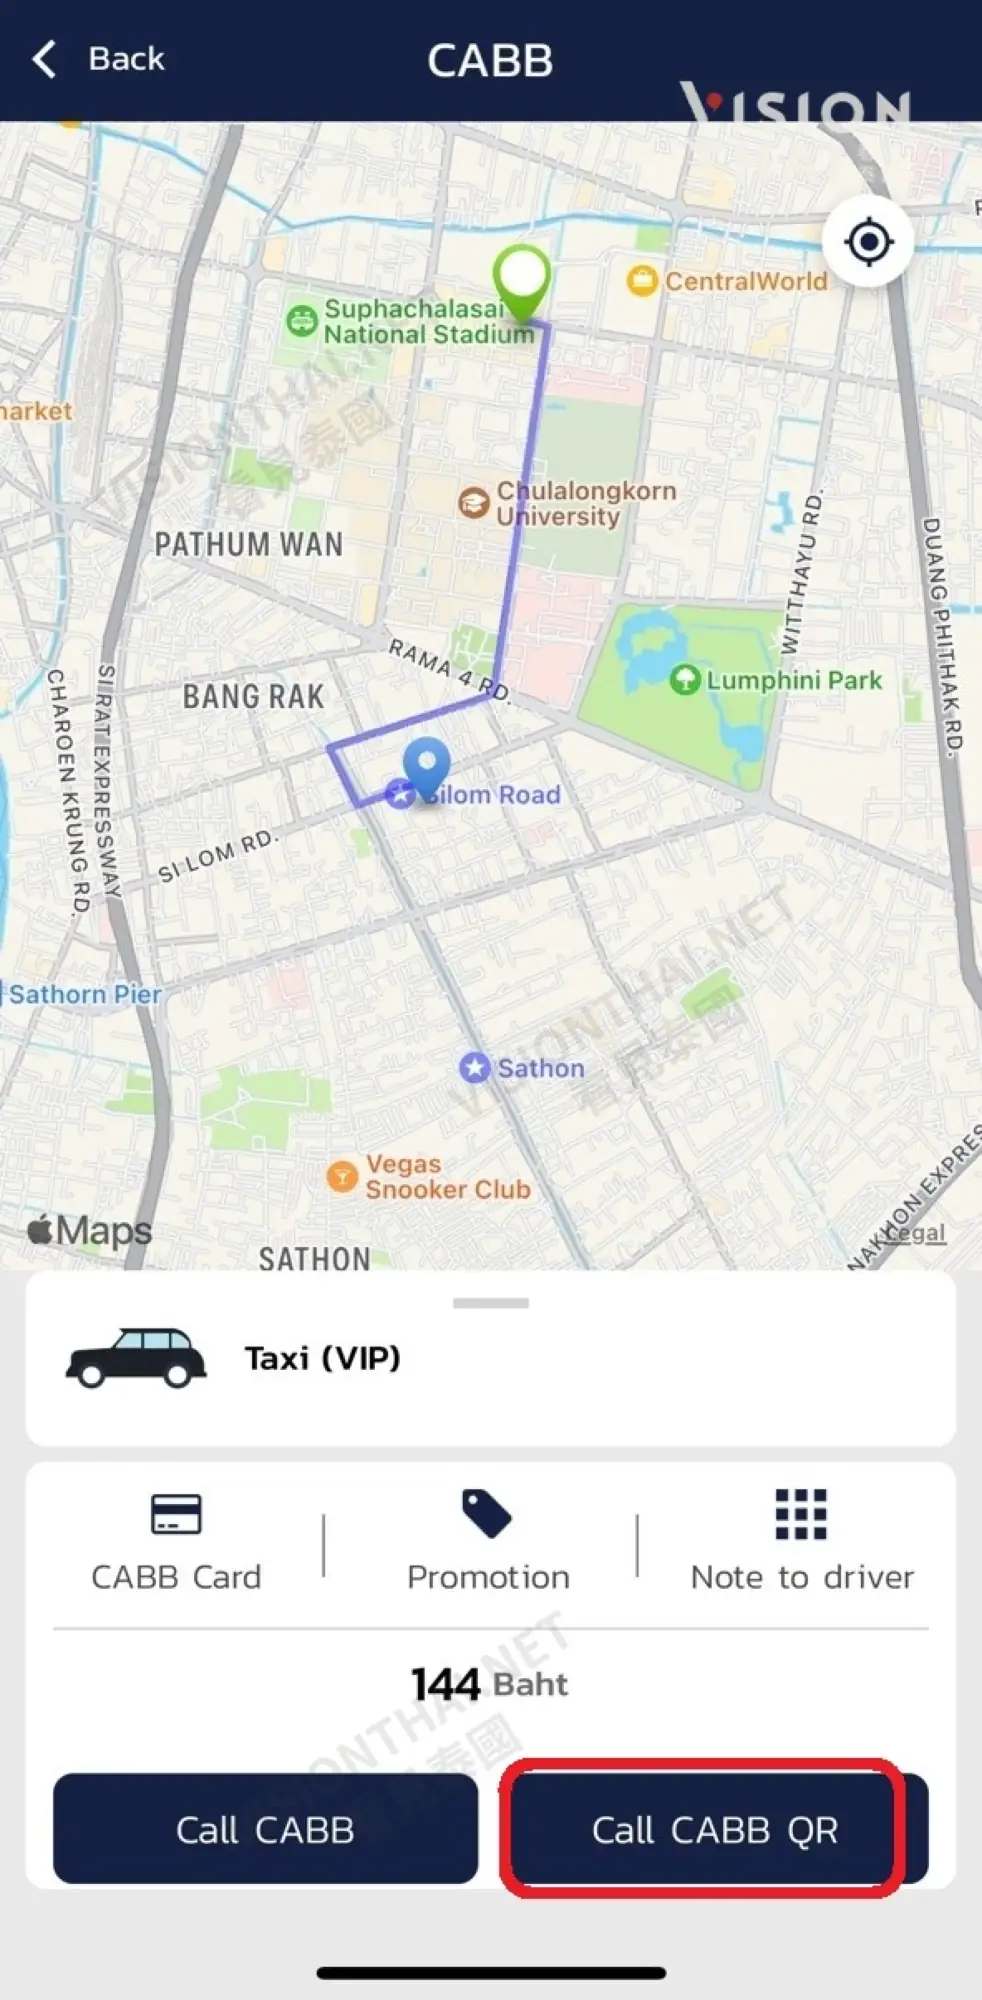 泰國叫車App CABB使用教學（圖片來源：Vision Thai 看見泰國）